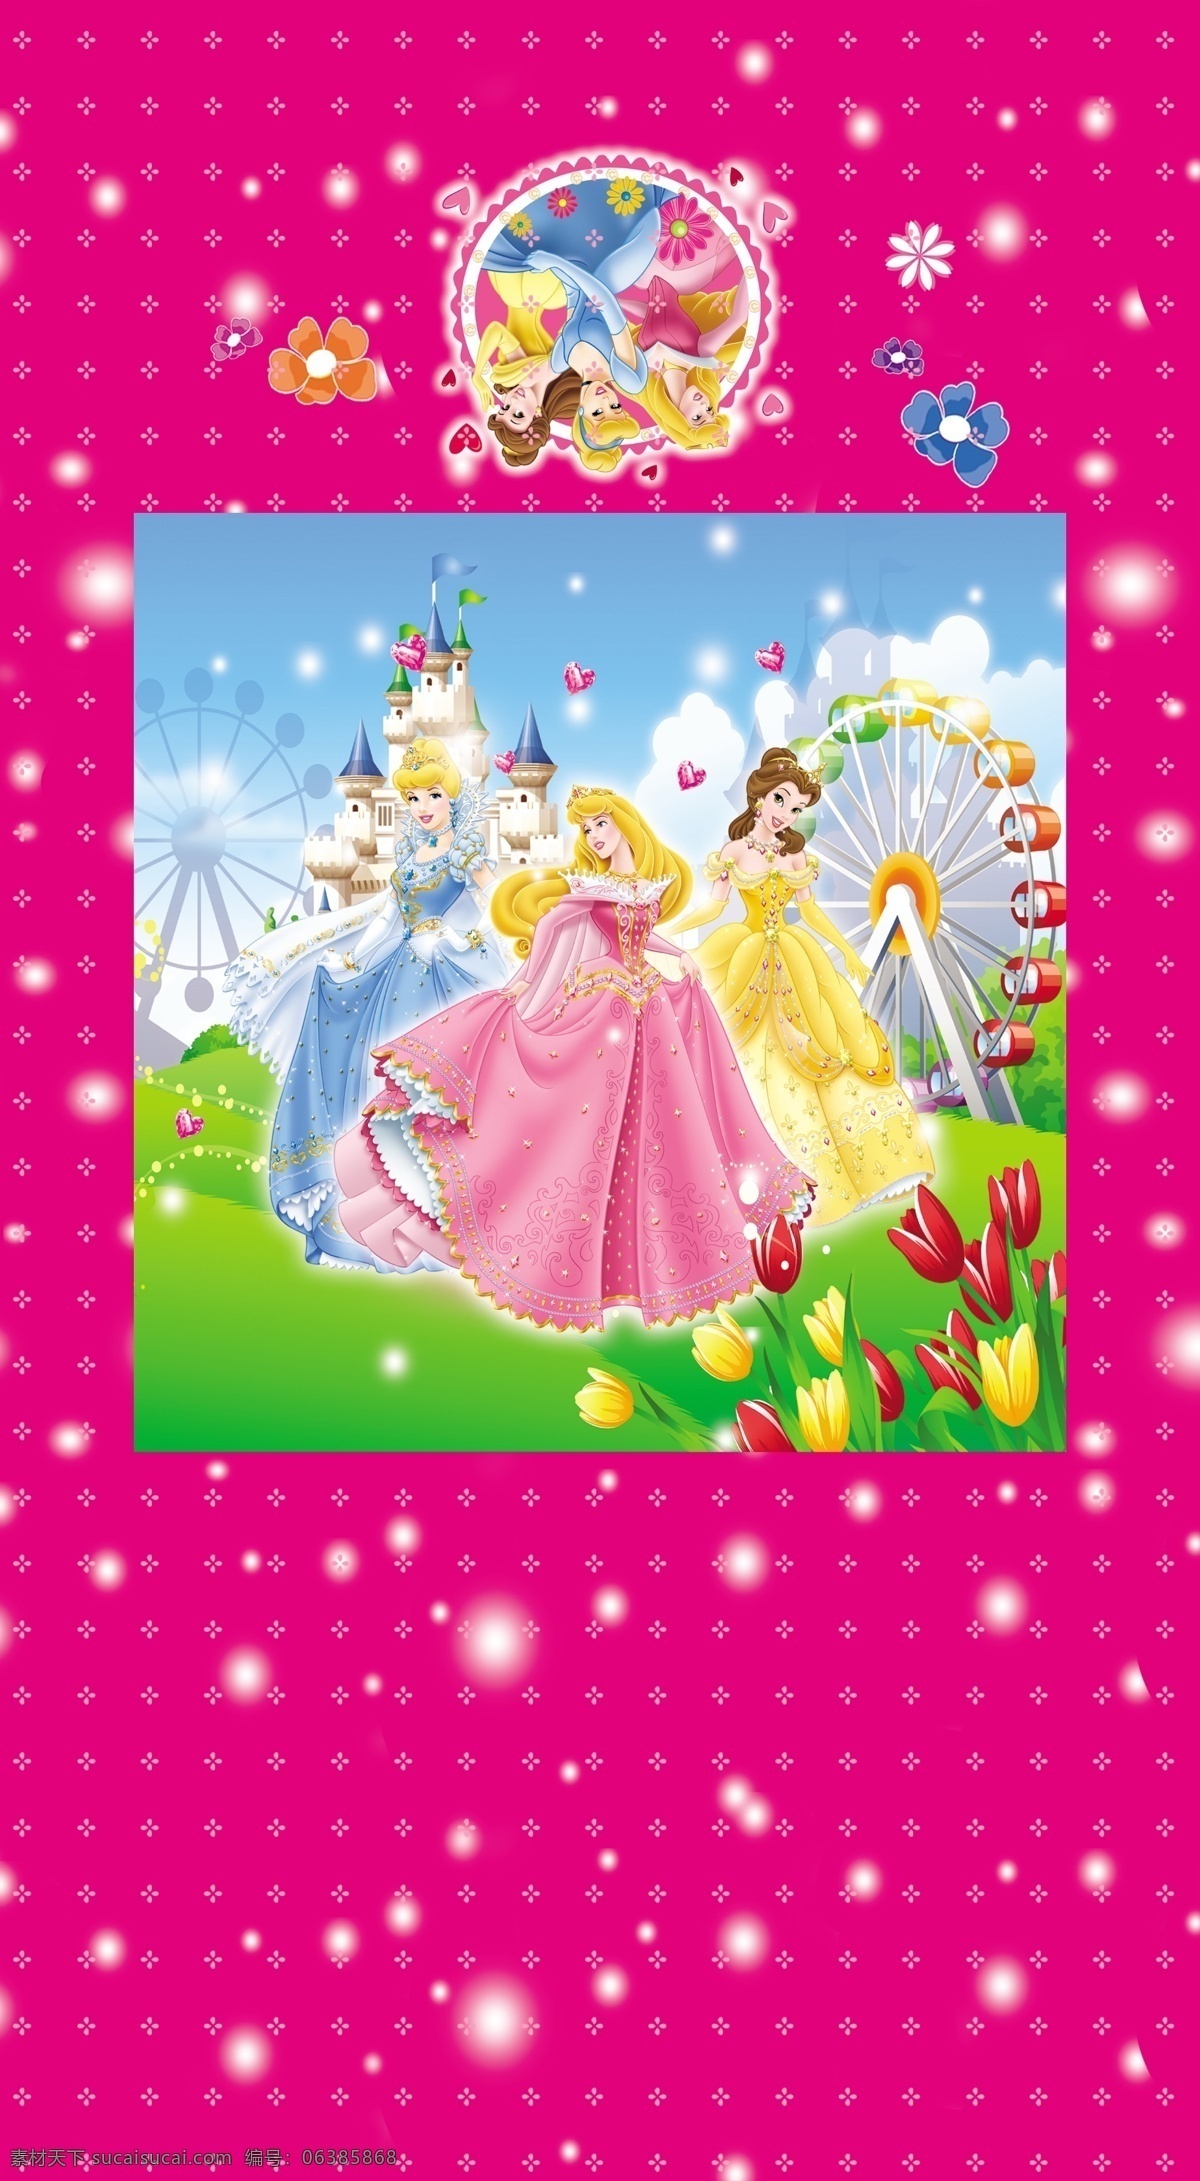 迪士尼 公主 包装 模版下载 卡通 迪士尼公主 三公主 城堡 摩天轮 天空 草地 花 包装设计 广告设计模板 源文件